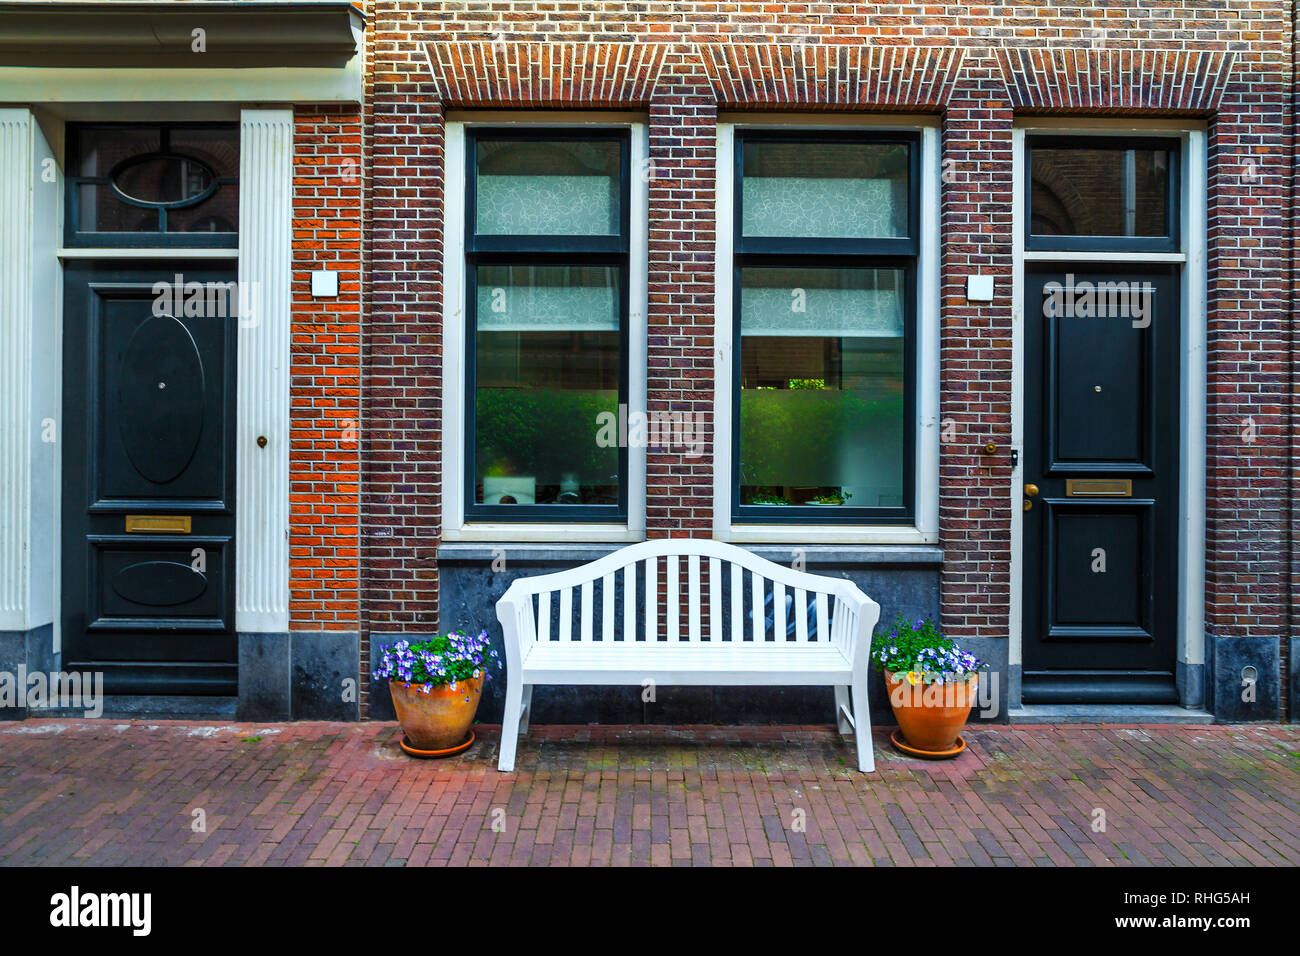 Belle entrée et maison en brique décorée de fleurs colorées, Amsterdam, Pays-Bas, Europe Banque D'Images